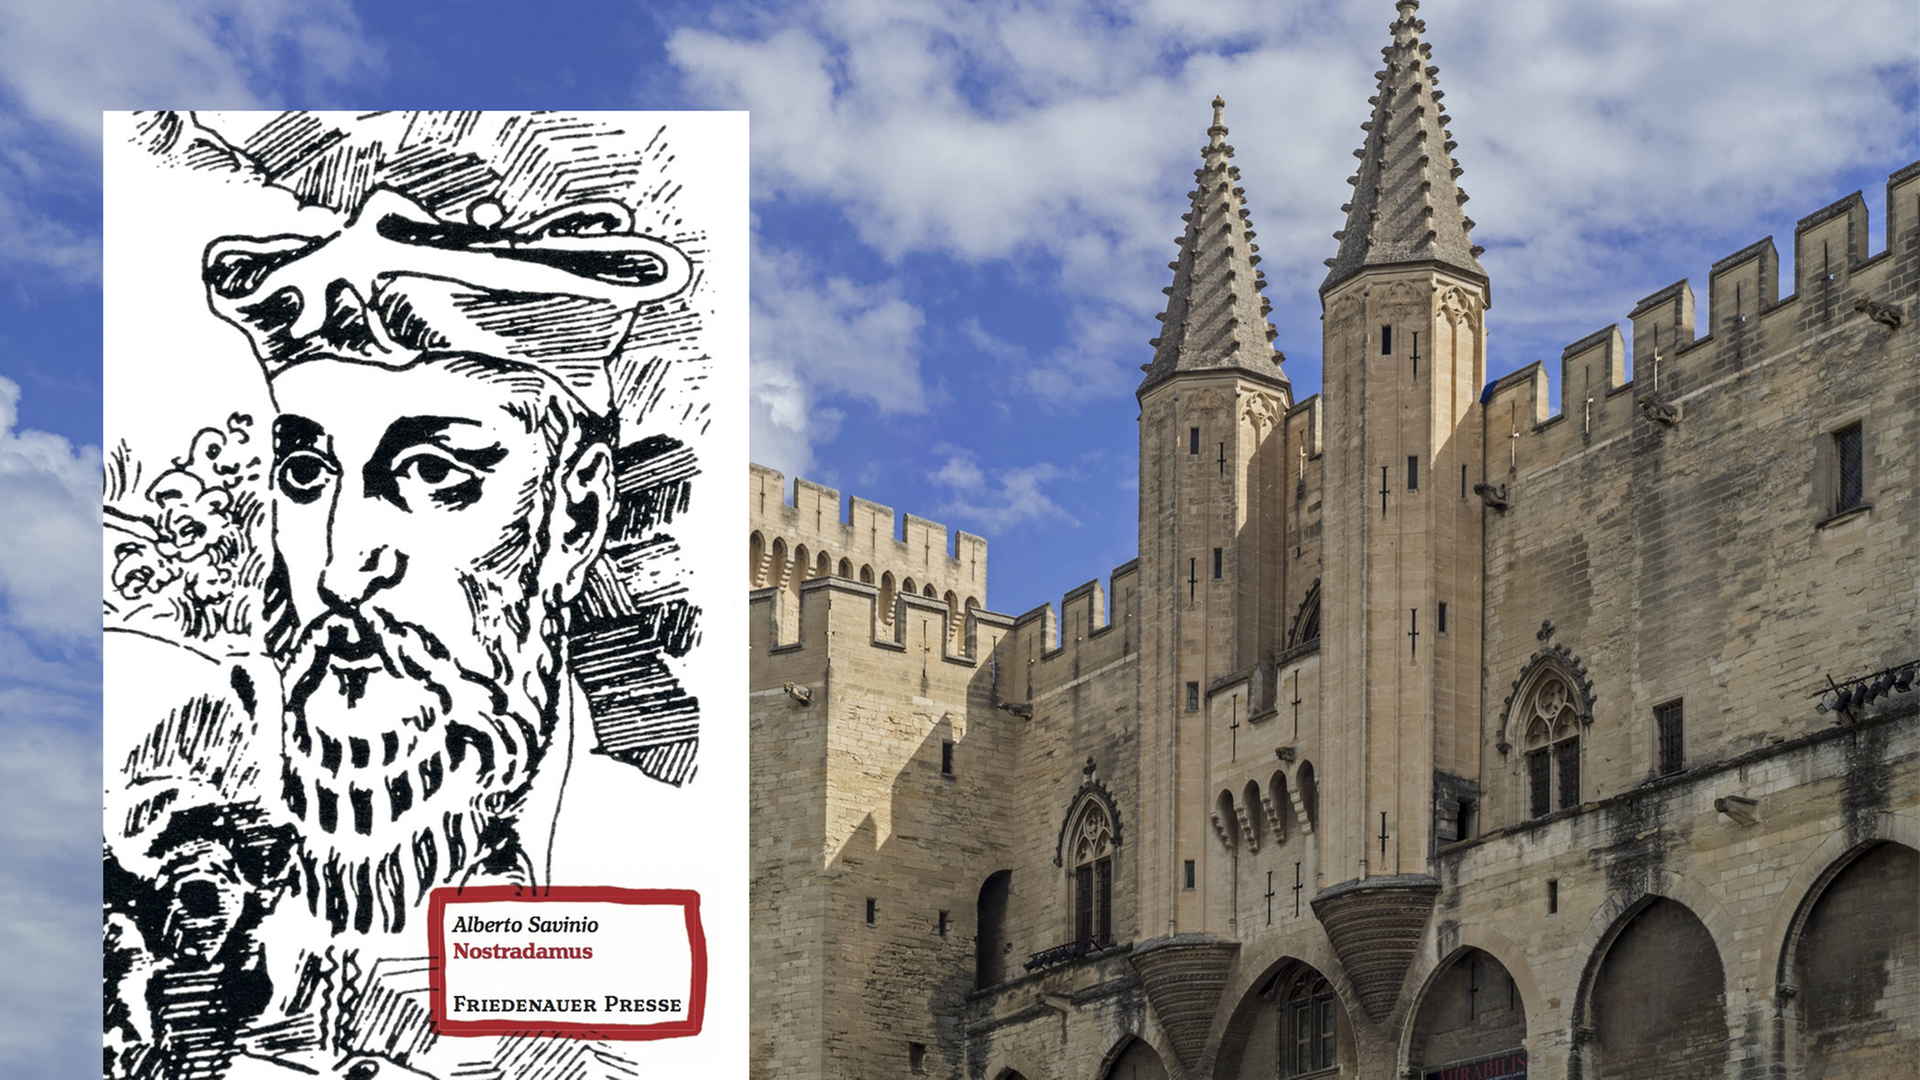 Im Vordergrund ist das Cover des Buches "Nostradamus" von Alberto Savinio. Im Hintergrund der Papstpalast von Avignon.